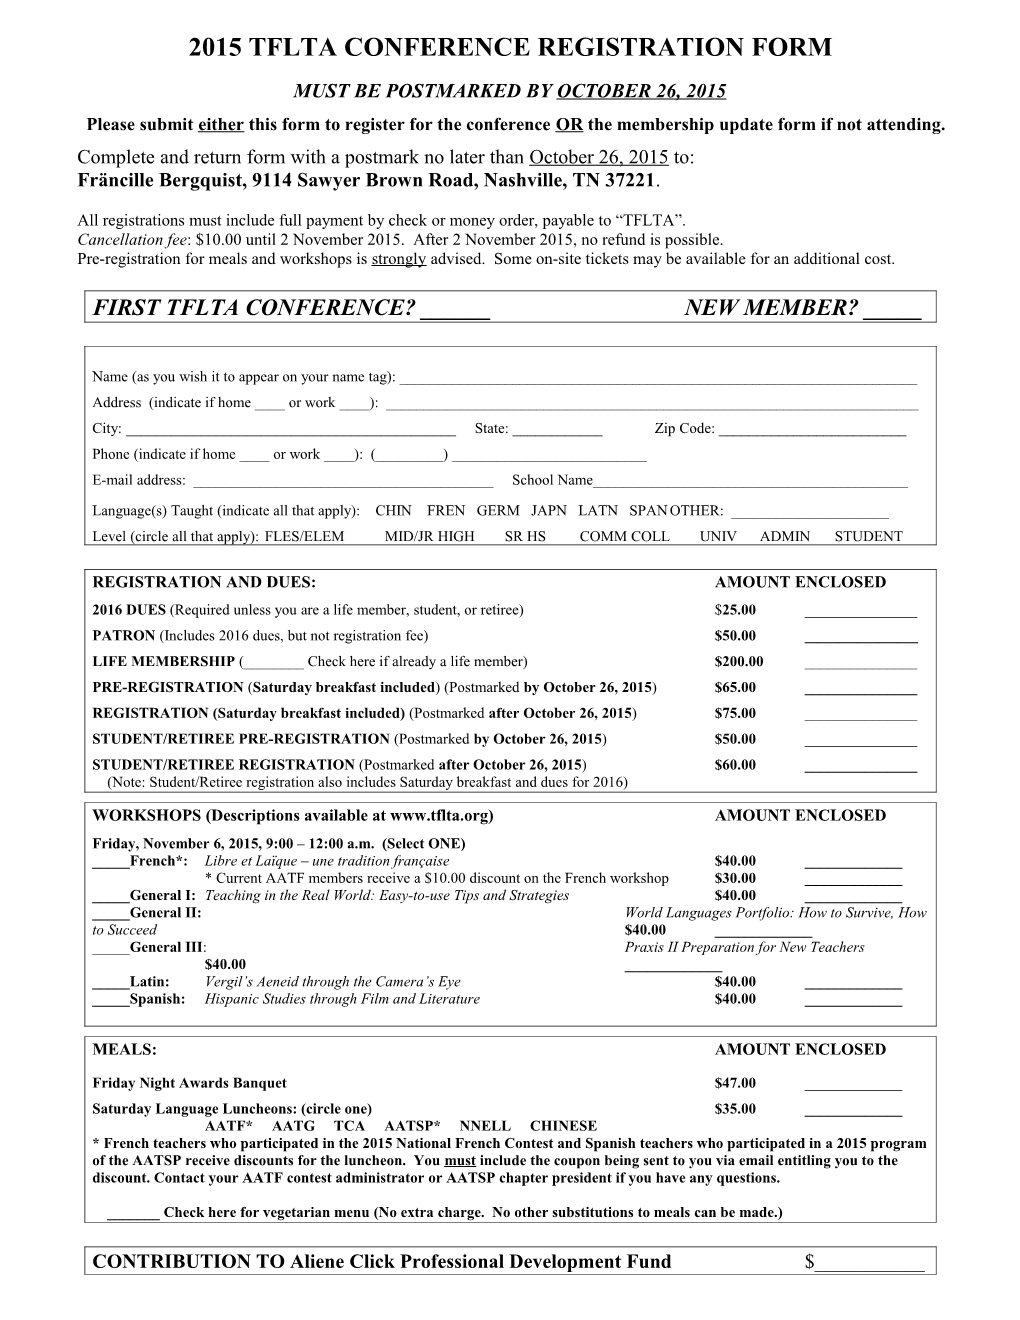 2005 Tflta Conference Registration Form